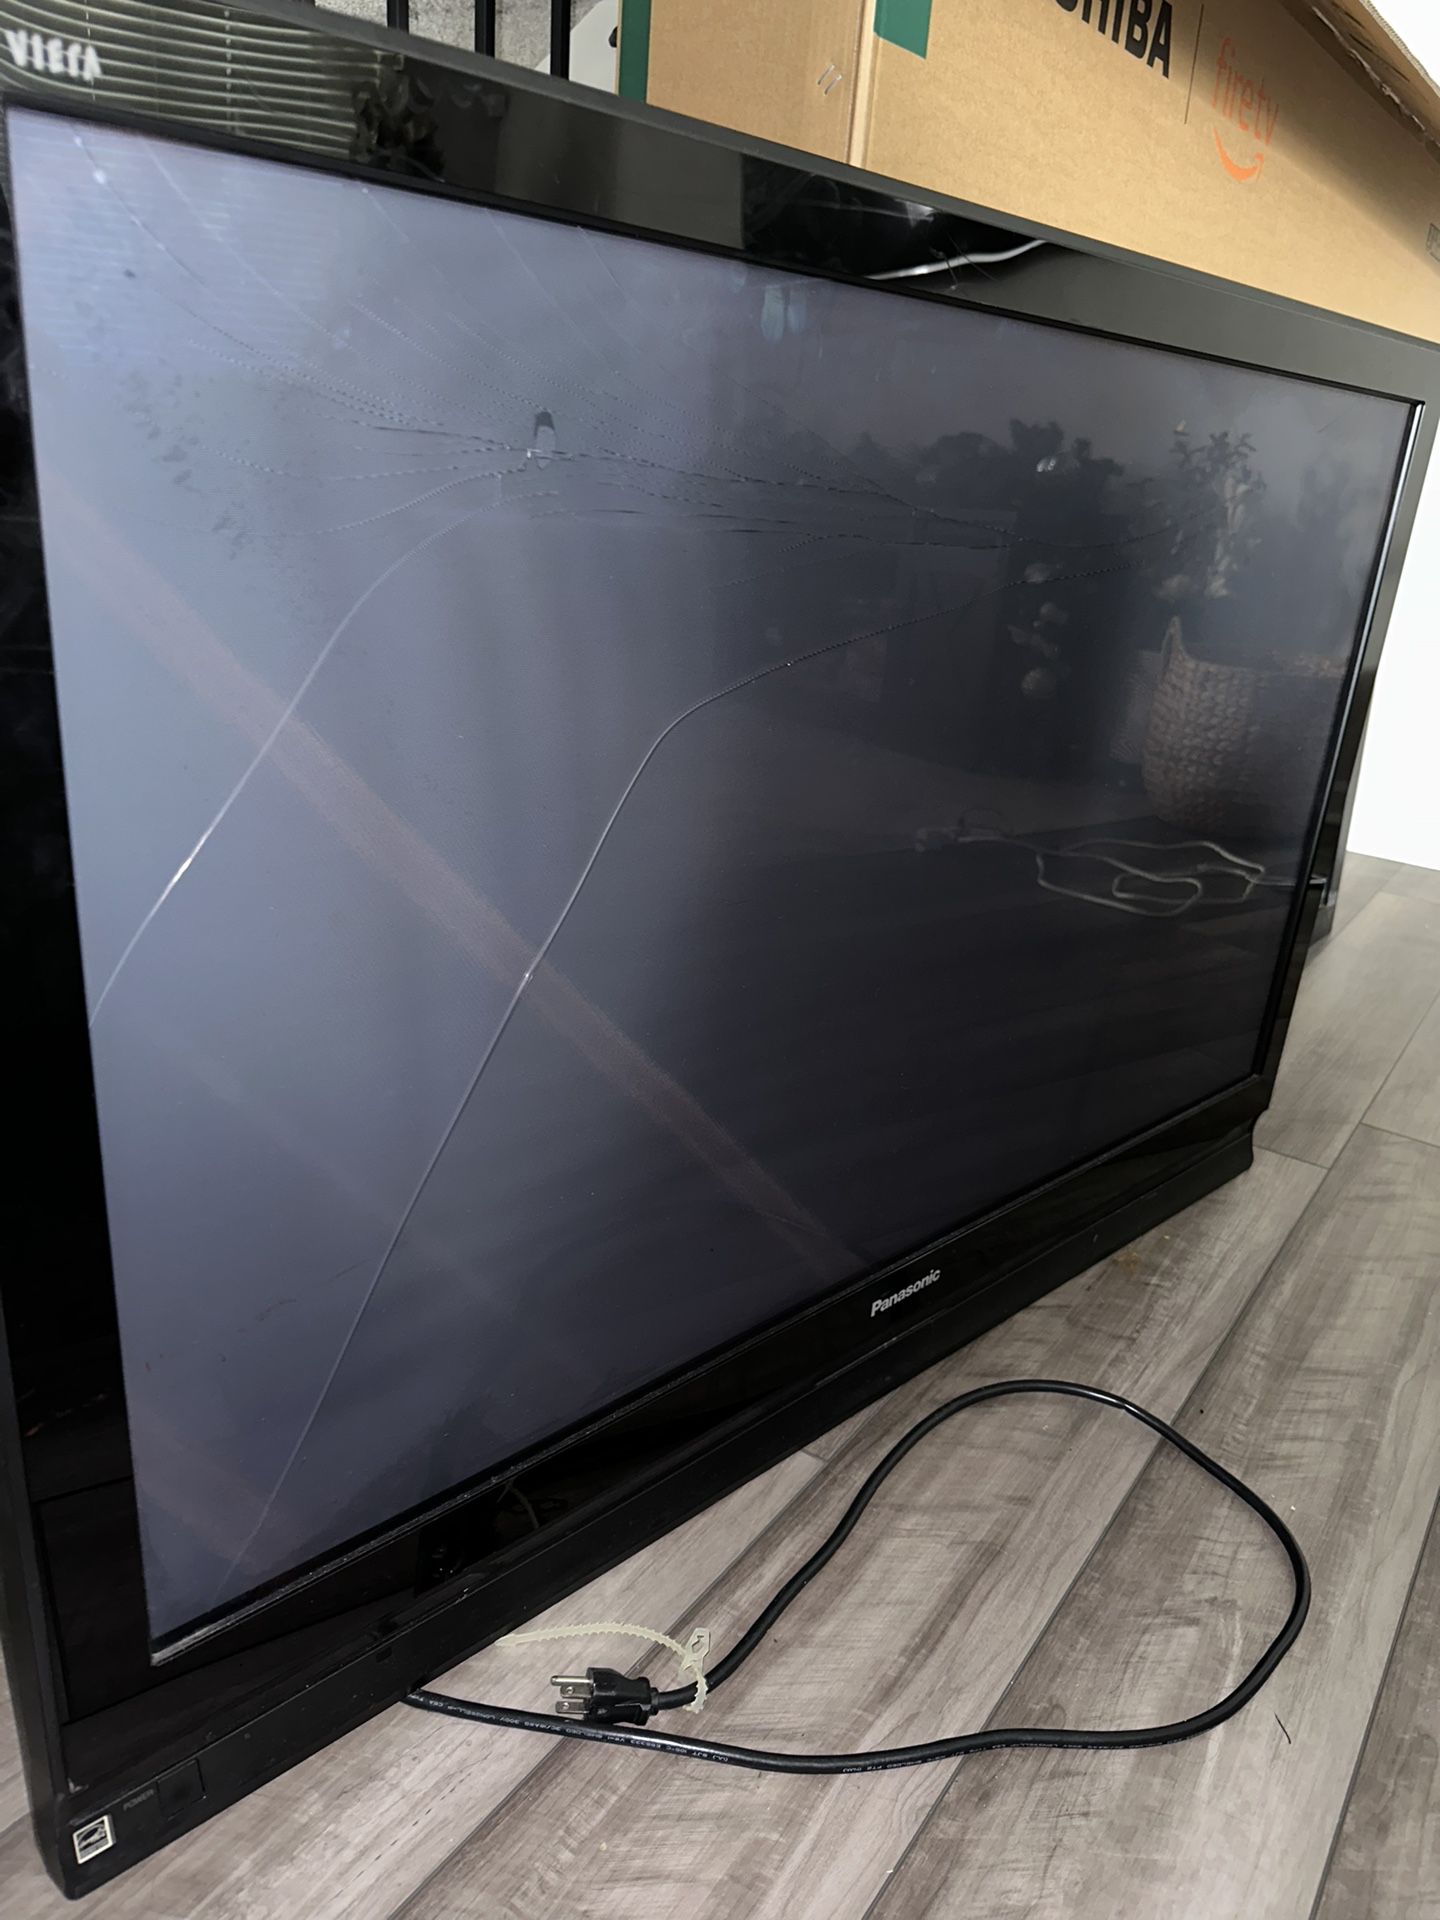 50-inch Panasonic TV